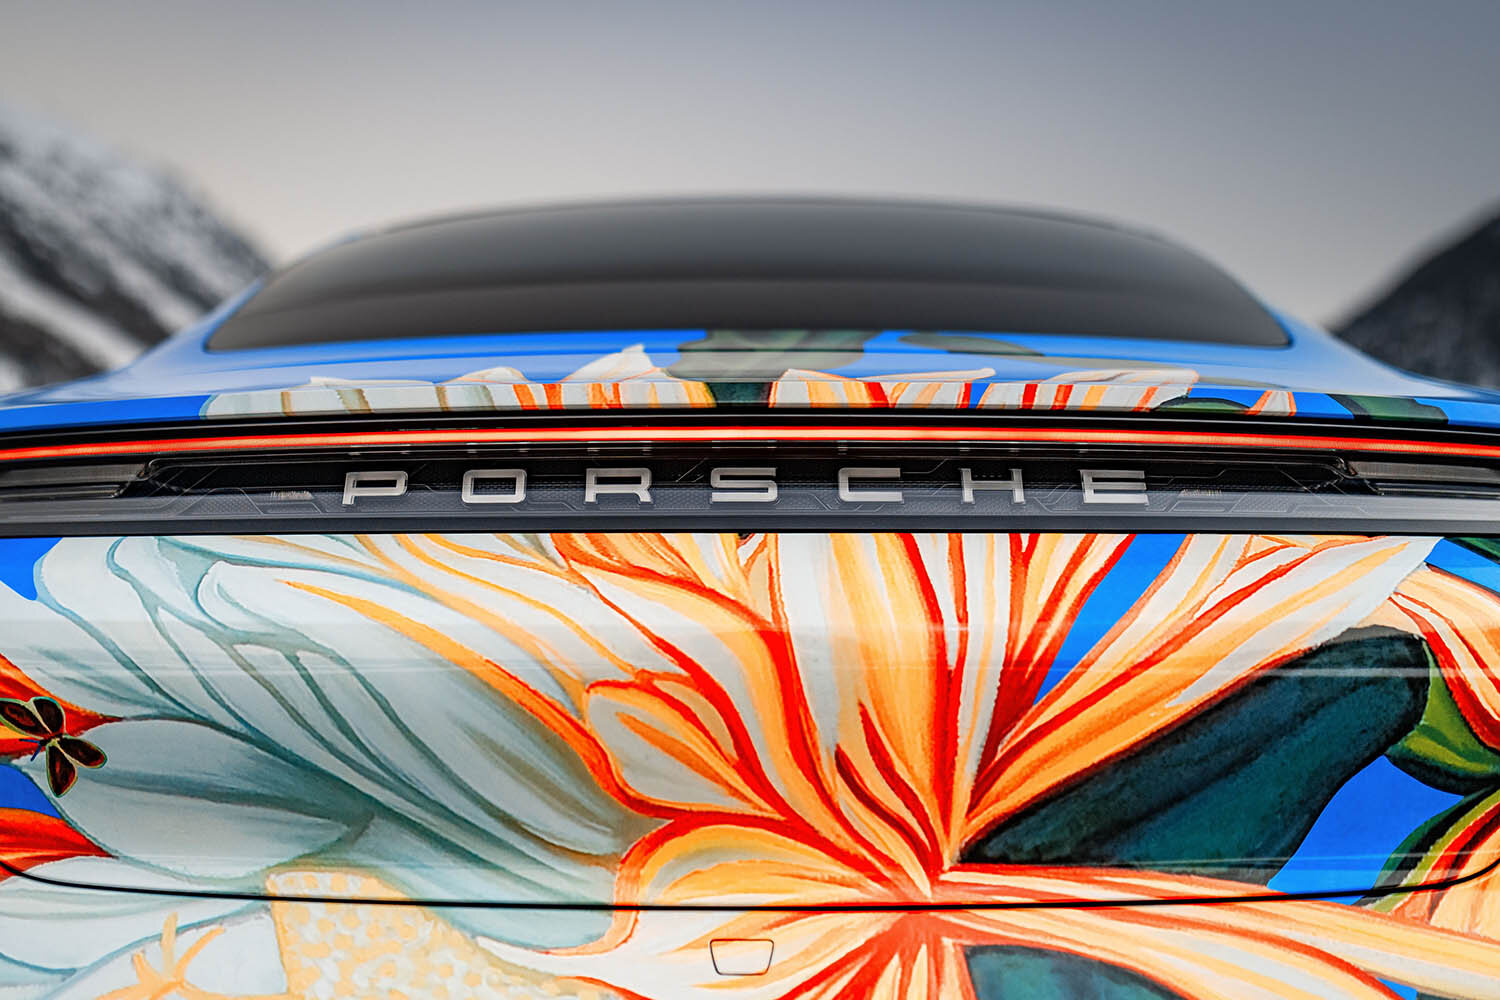 2020-Porsche-Taycan-4S-Artcar-by-Richard-Phillips_29.jpg